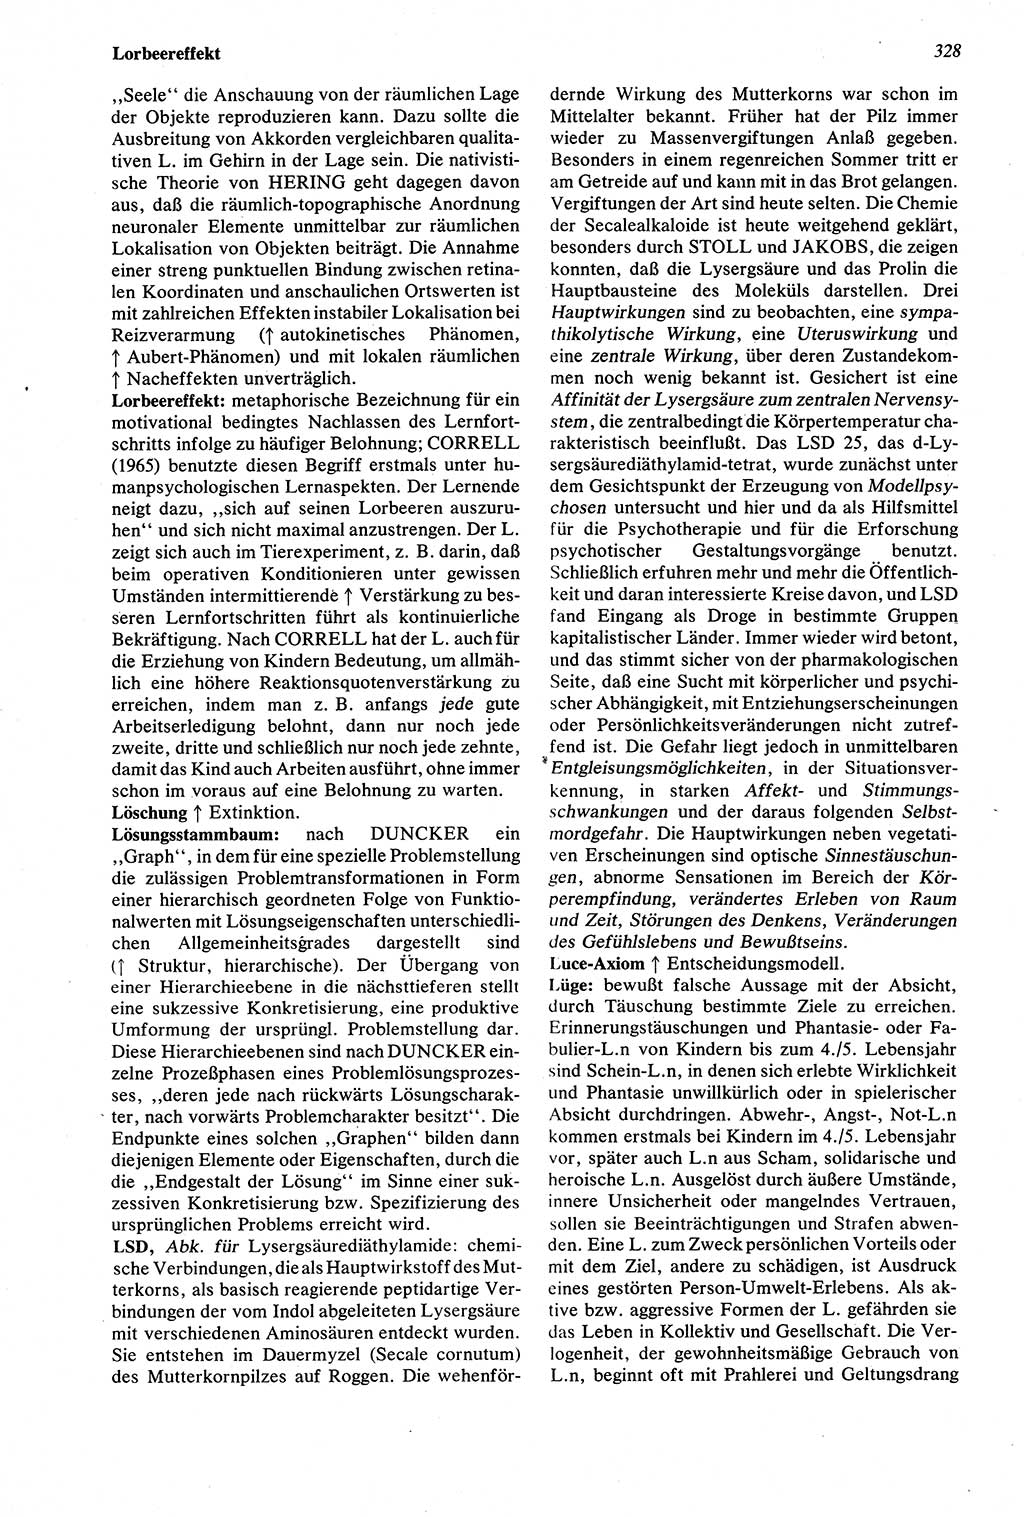 Wörterbuch der Psychologie [Deutsche Demokratische Republik (DDR)] 1976, Seite 328 (Wb. Psych. DDR 1976, S. 328)